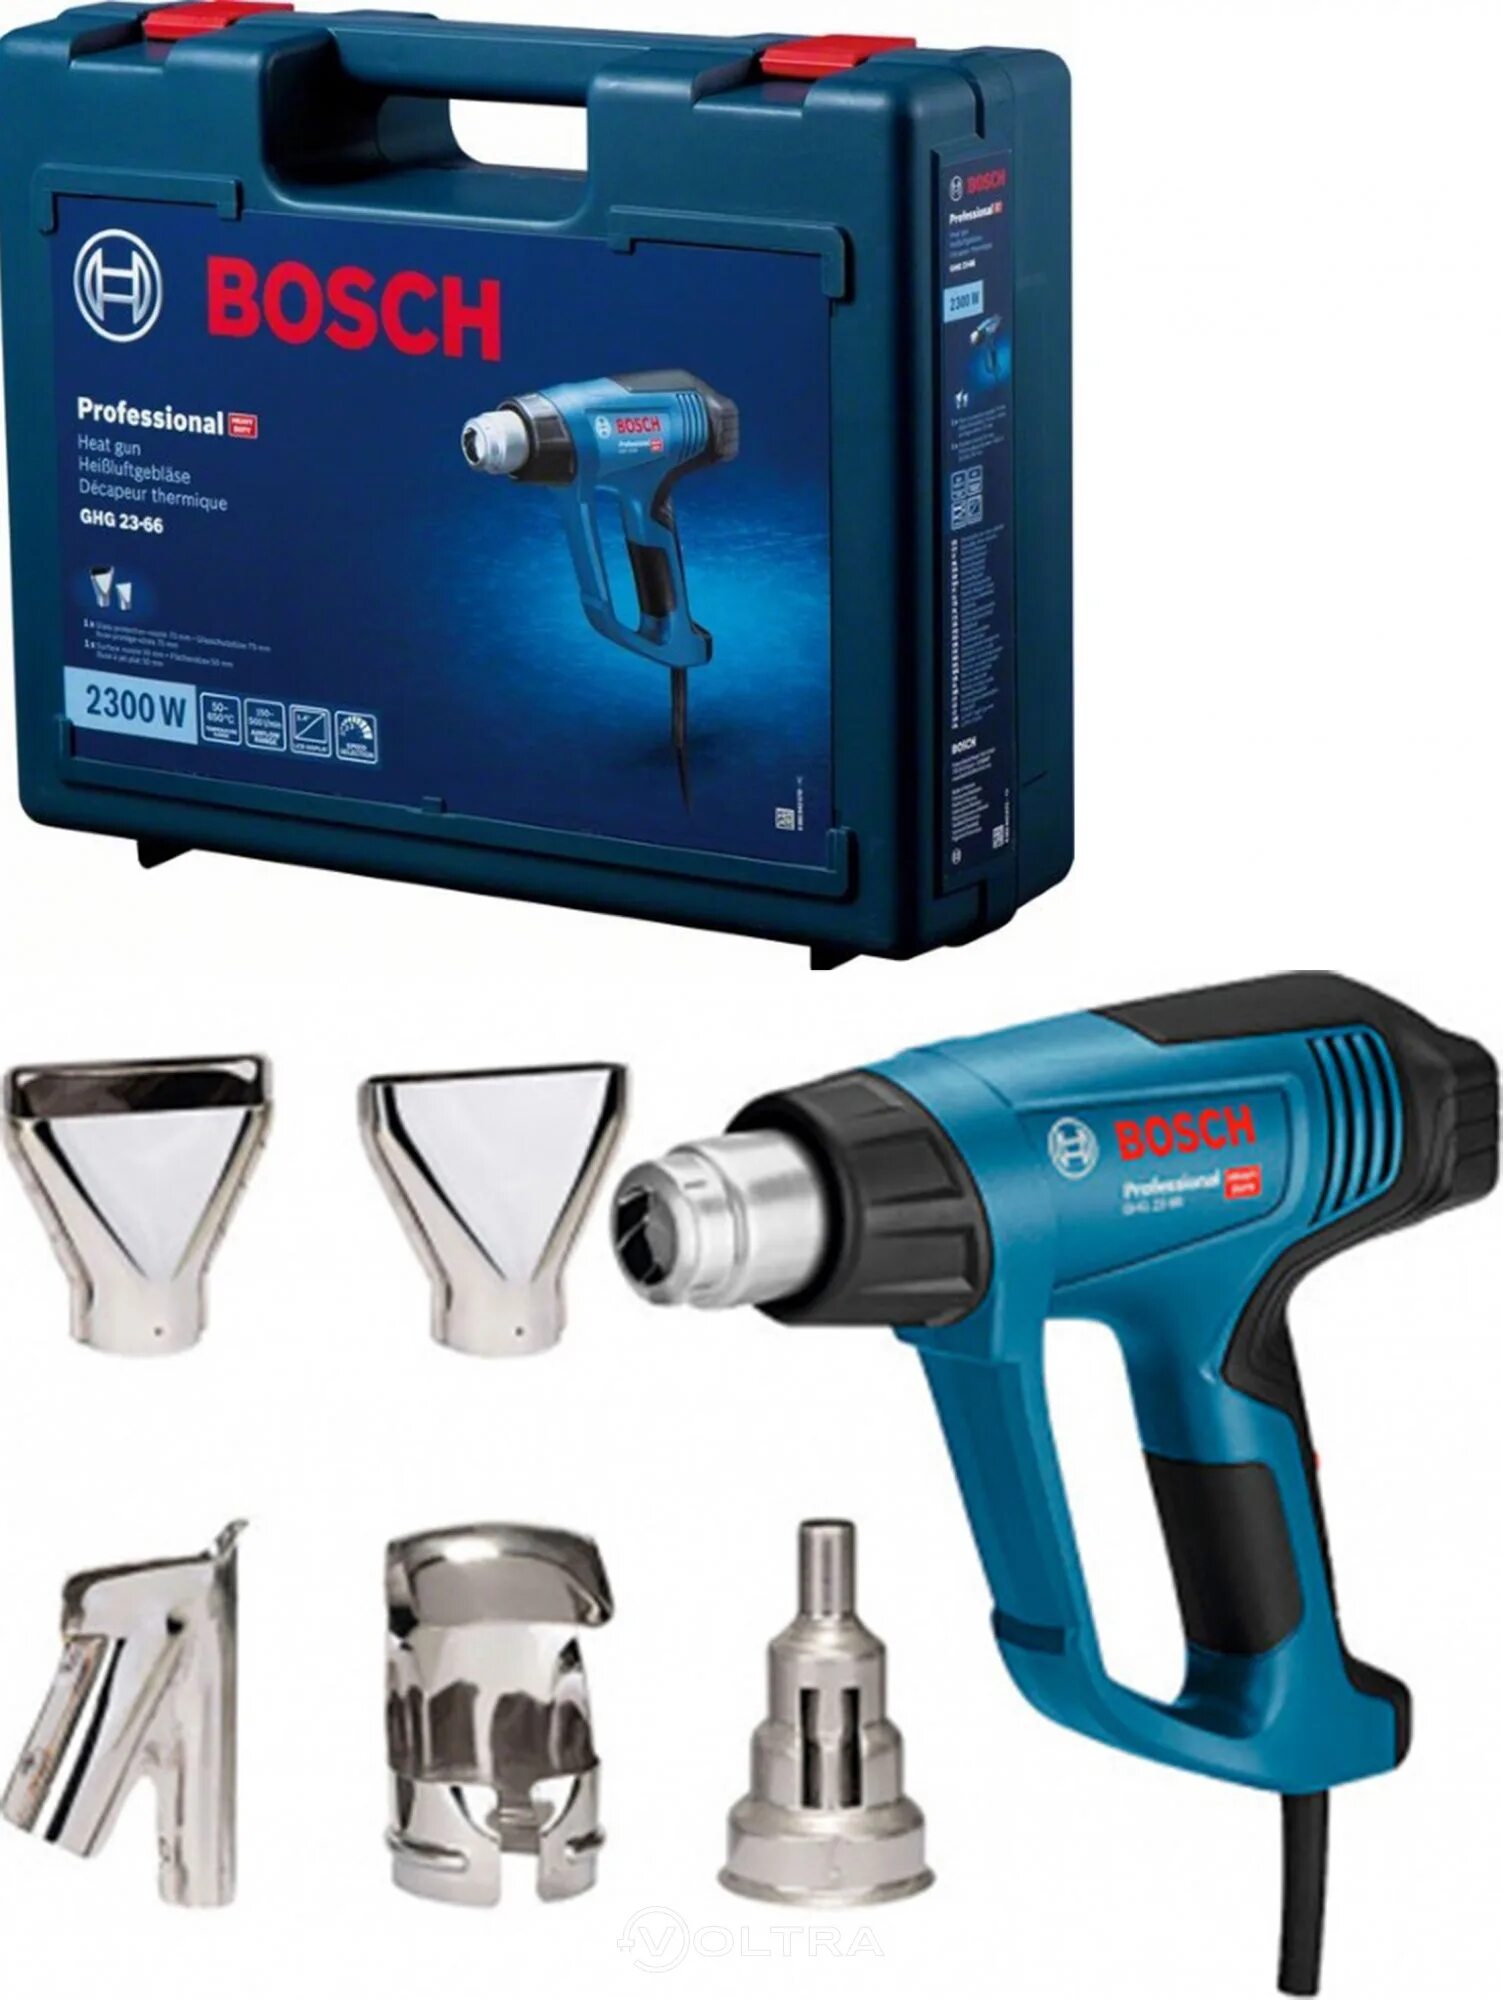 Купить bosch 23. Фен технический Bosch ghg 23-66 06012a6301. Фен технический Bosch ghg 23-66. Фен технический ghg 20-63 Bosch 2000 Вт. Bosch professional ghg 20-66.